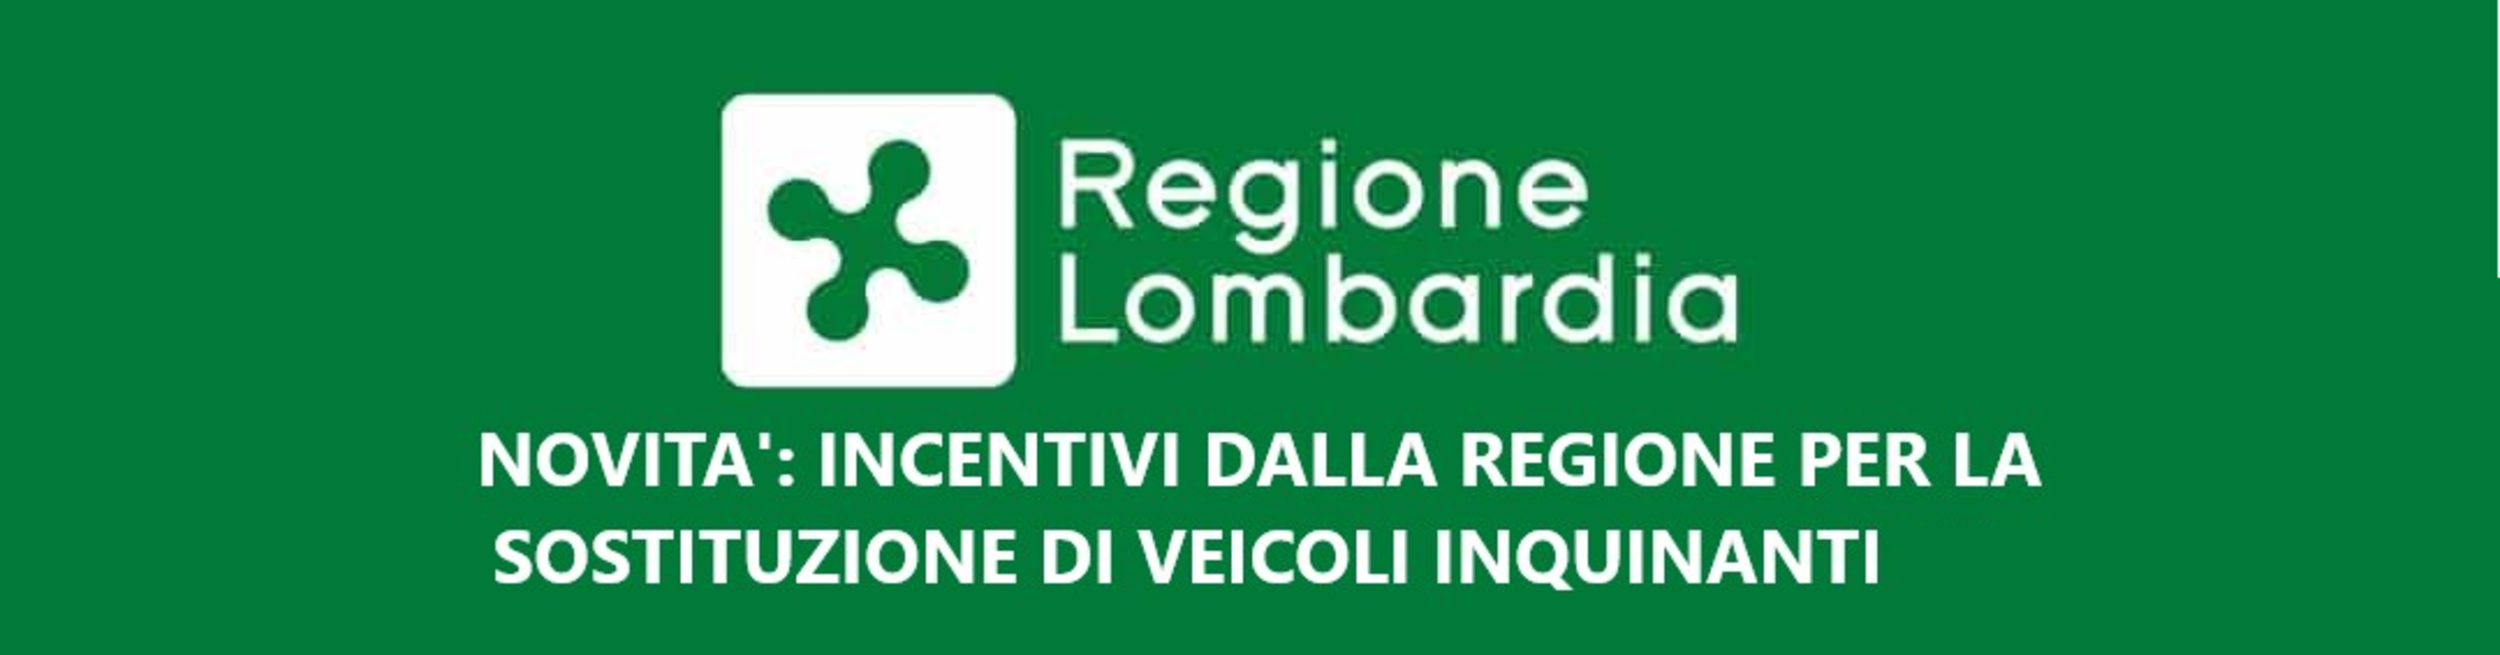 Promozione INCENTIVI DALLA REGIONE LOMBARDIA  - Lombardia Truck